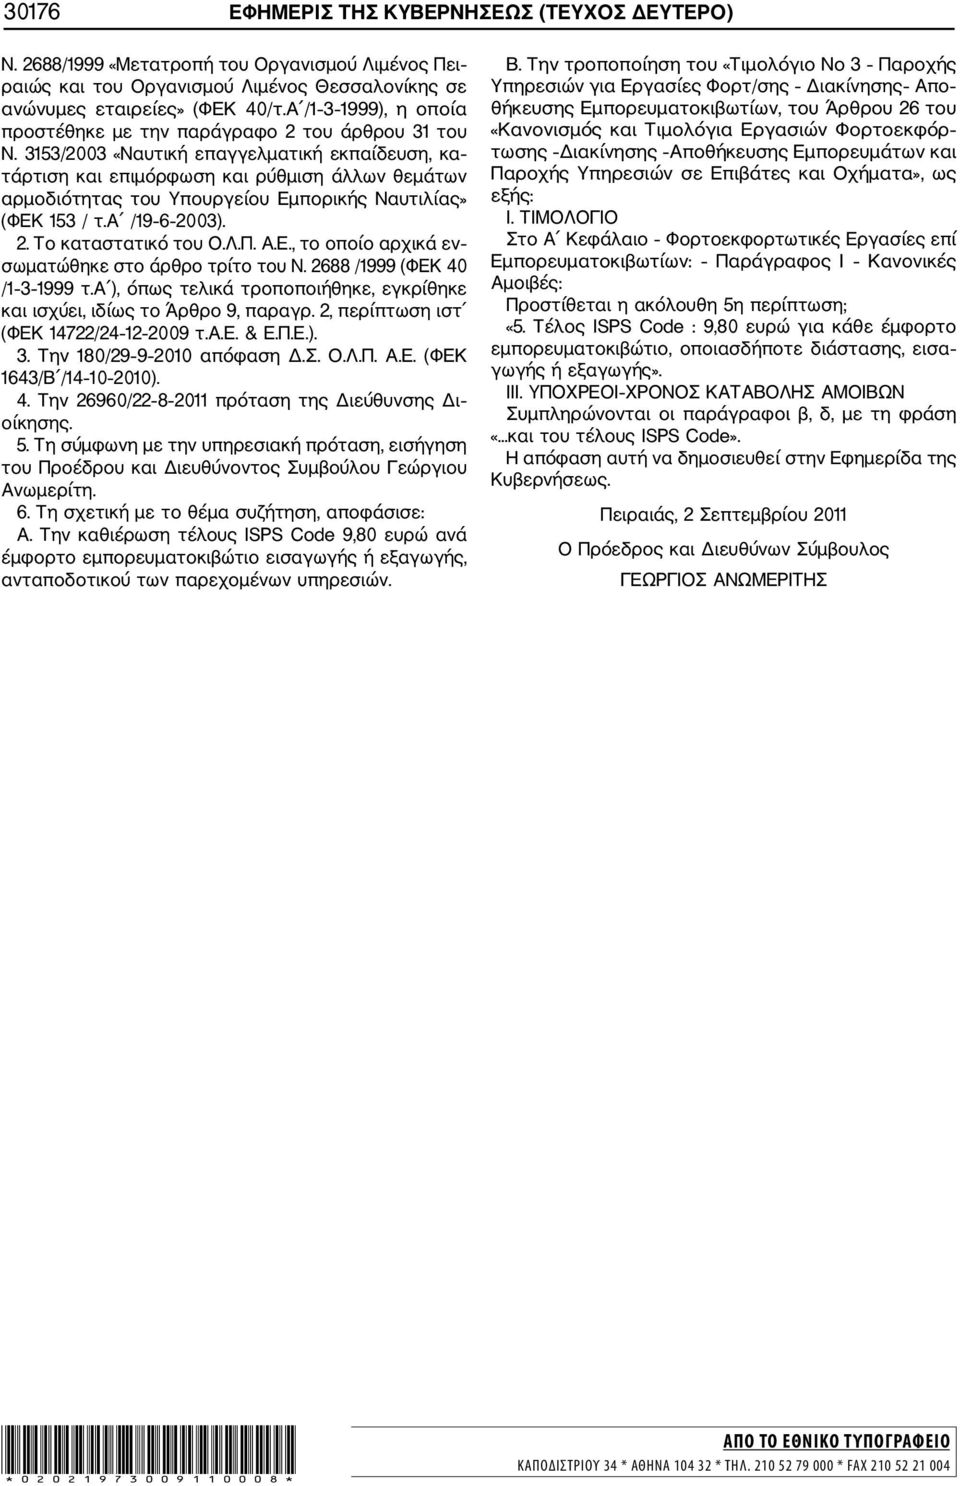 3153/2003 «Ναυτική επαγγελματική εκπαίδευση, κα τάρτιση και επιμόρφωση και ρύθμιση άλλων θεμάτων αρμοδιότητας του Υπουργείου Εμπορικής Ναυτιλίας» (ΦΕΚ 153 / τ.α /19 6 2003). 2. Το καταστατικό του Ο.Λ.